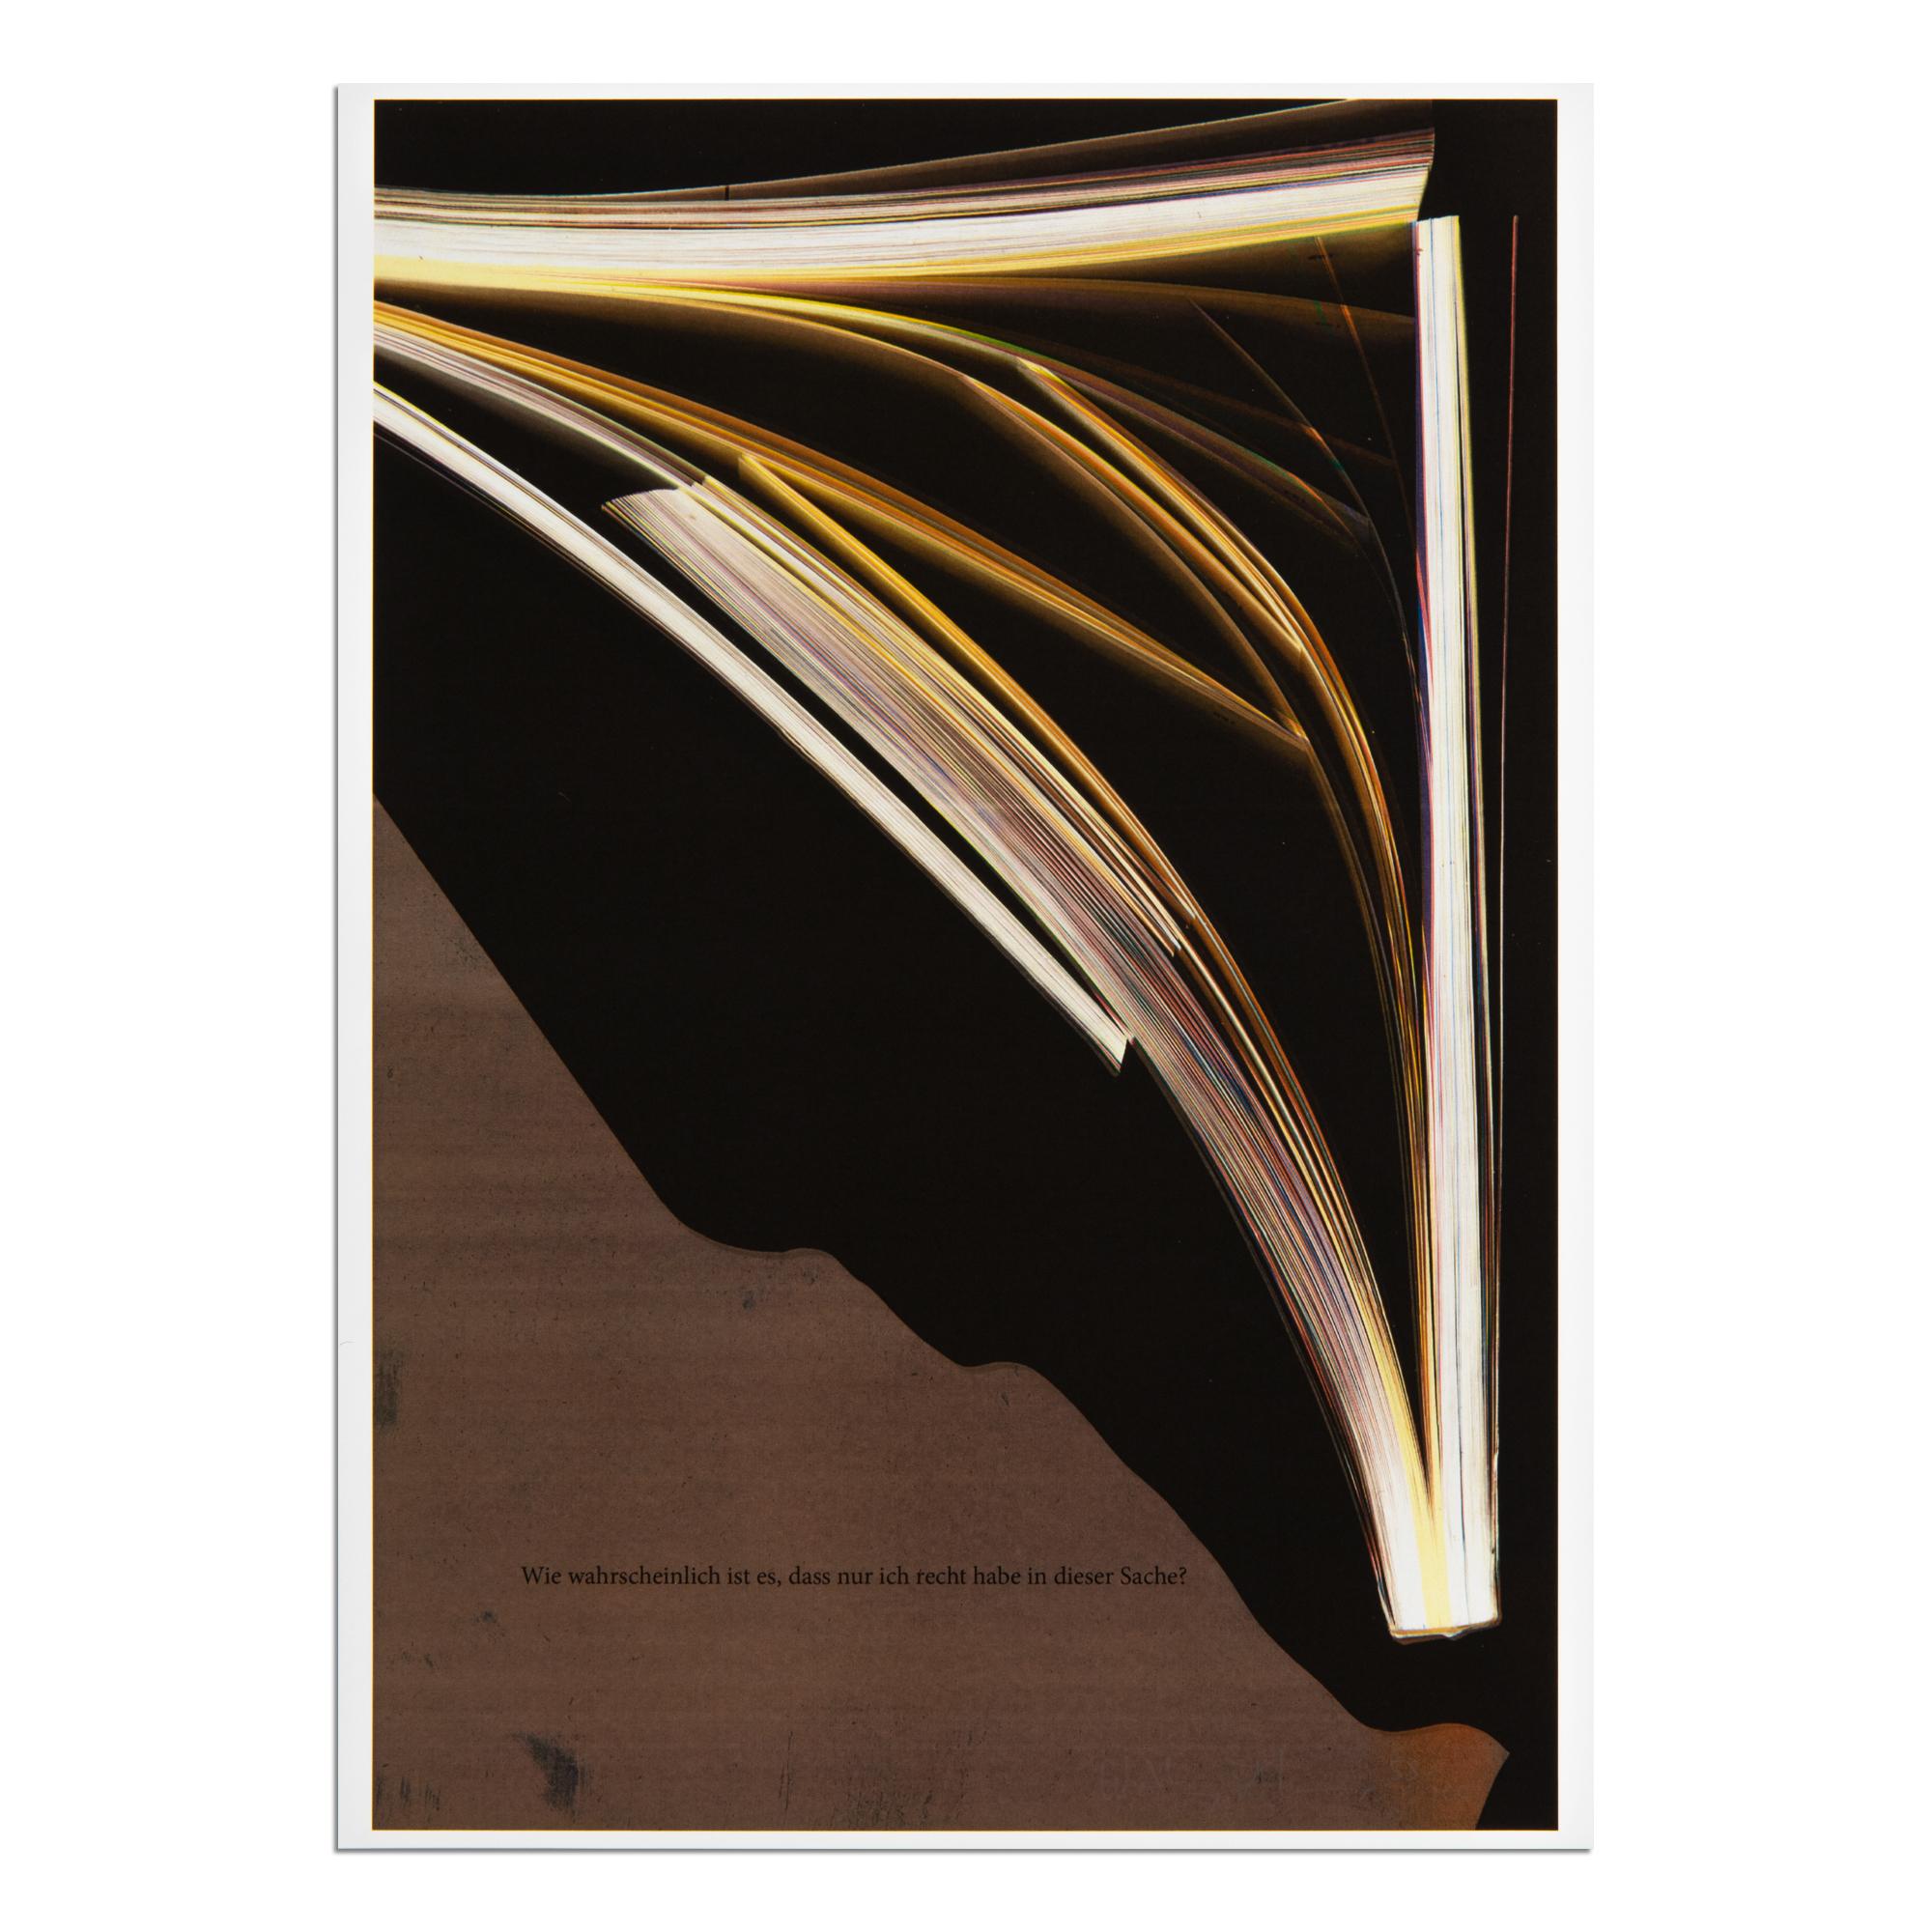 Wolfgang Tillmans (allemand, né en 1968)
Texte zur Kunst Edition 2018, 2018
Support : Impression à jet d'encre sur papier
Dimensions : 29,5 × 21 cm (11 3/5 × 8 3/10 in)
Edition de 100 exemplaires : Signé et numéroté à la main au crayon
Condit : Mint